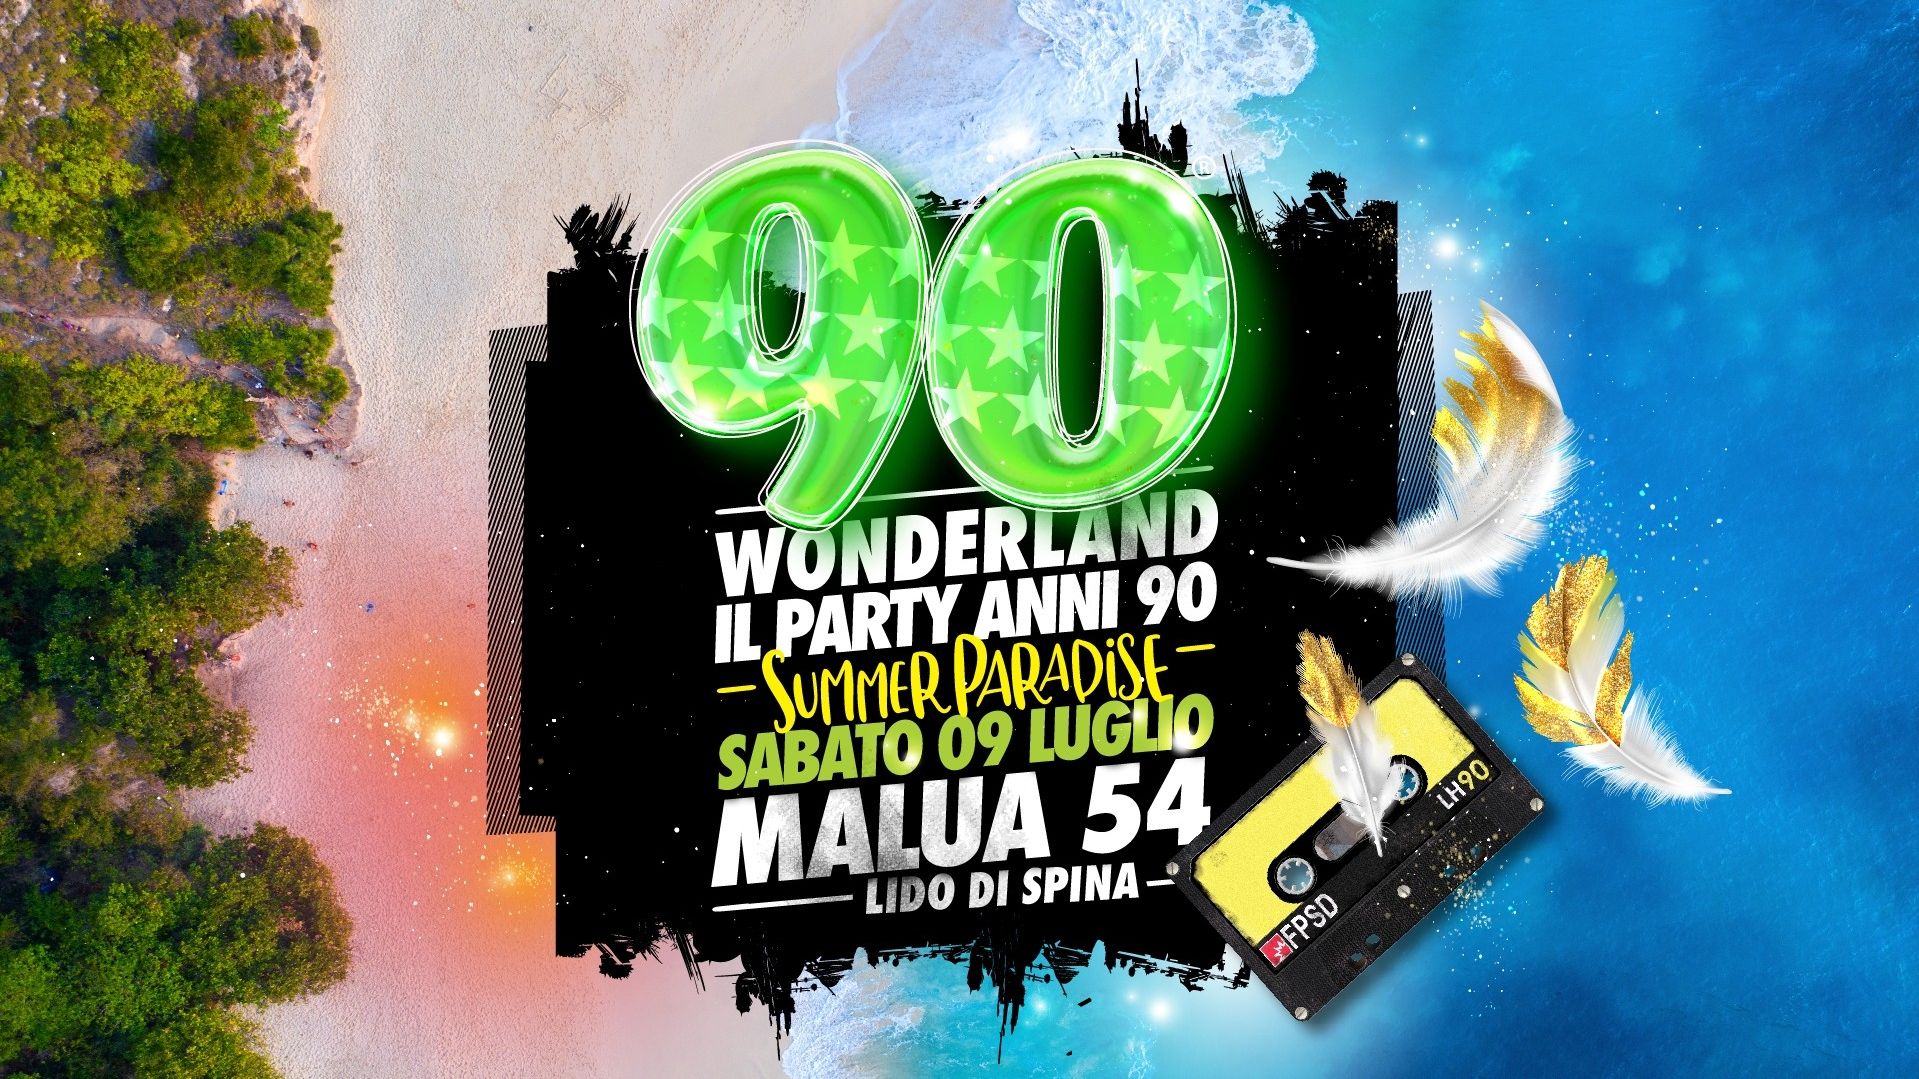 90 Wonderland